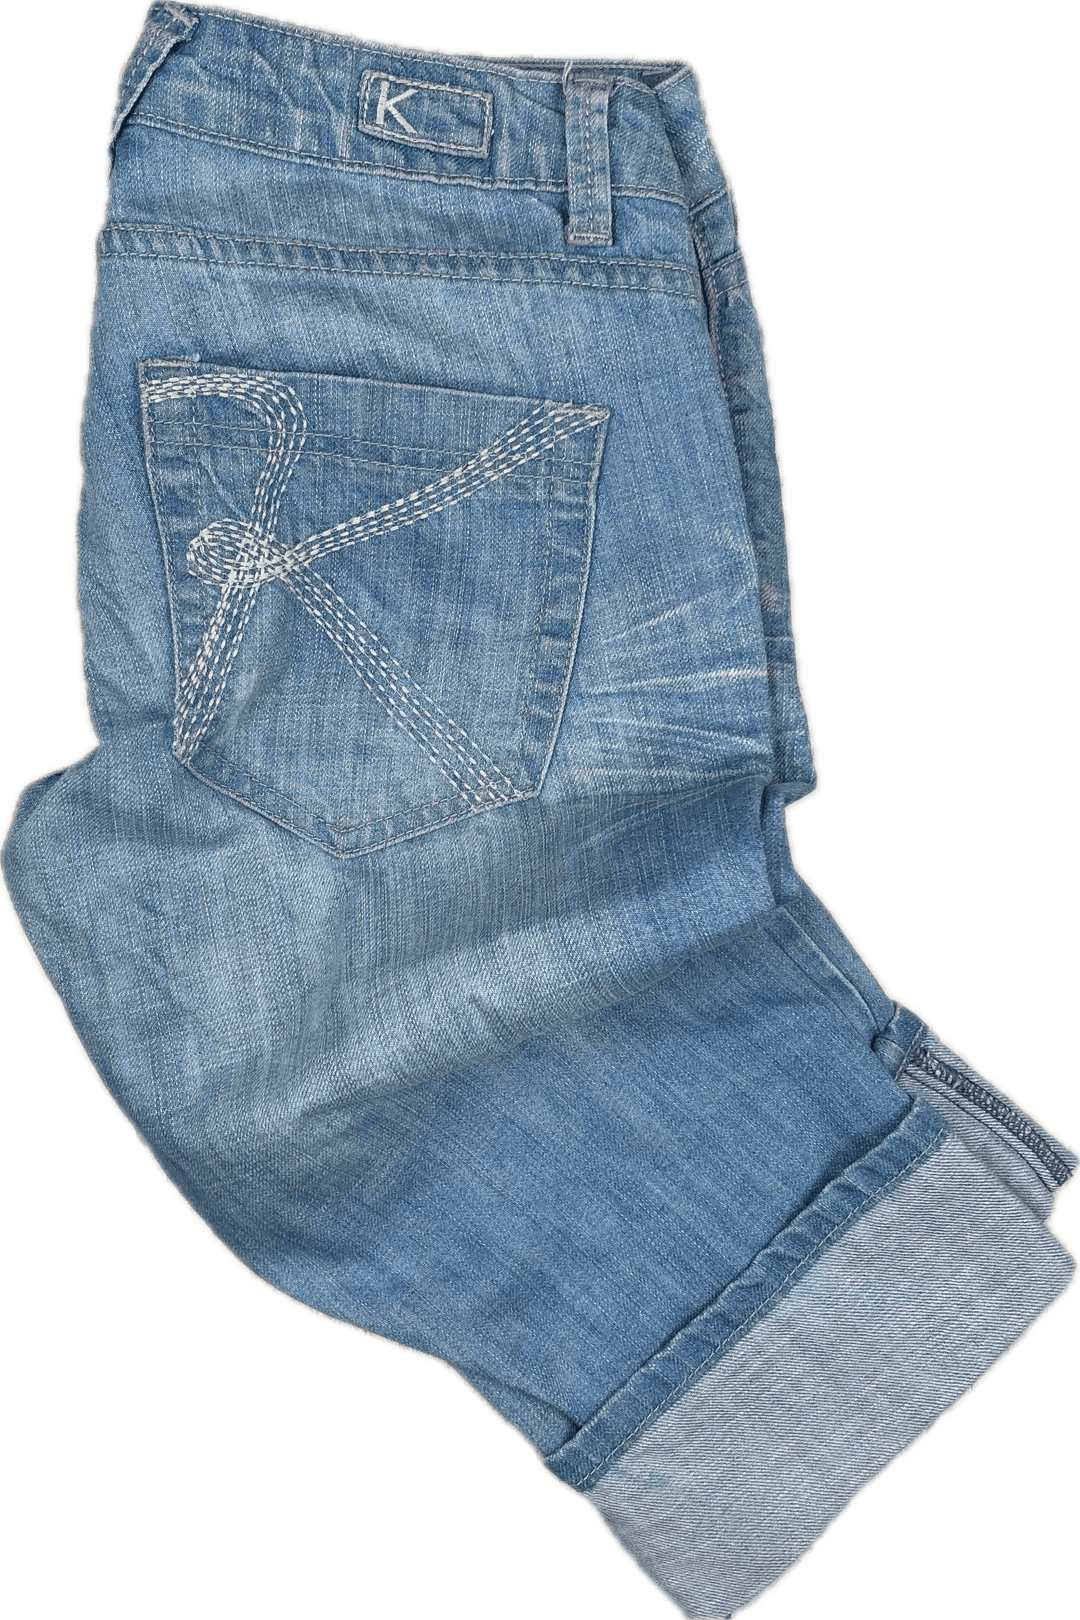 Kookai Ladies Cuffed Denim Long Shorts - Size 8 - Jean Pool